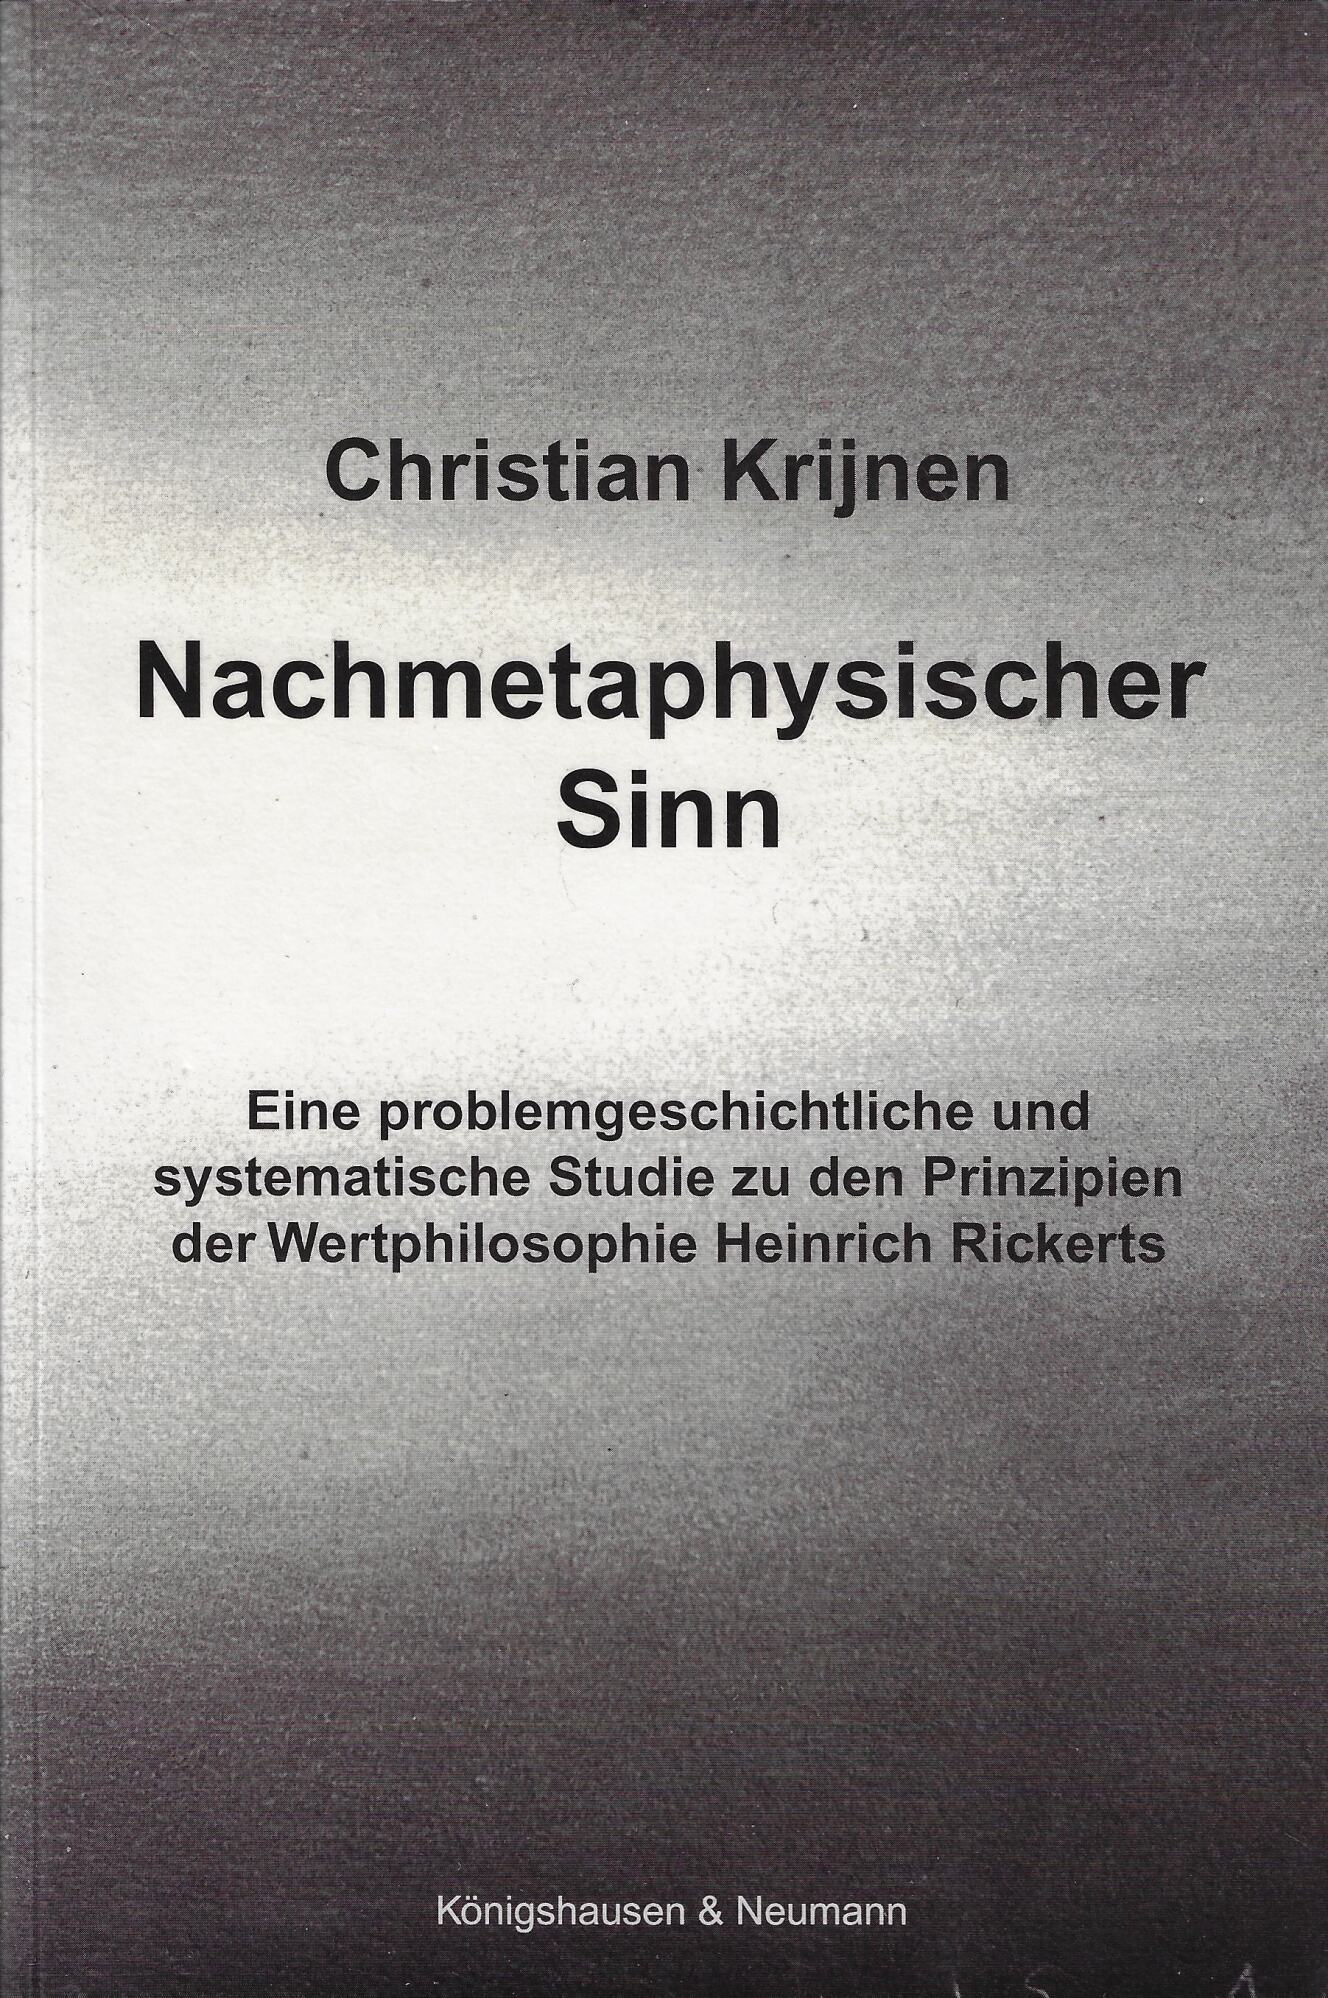 Nachmetaphysischer Sinn - Christian Krijnen